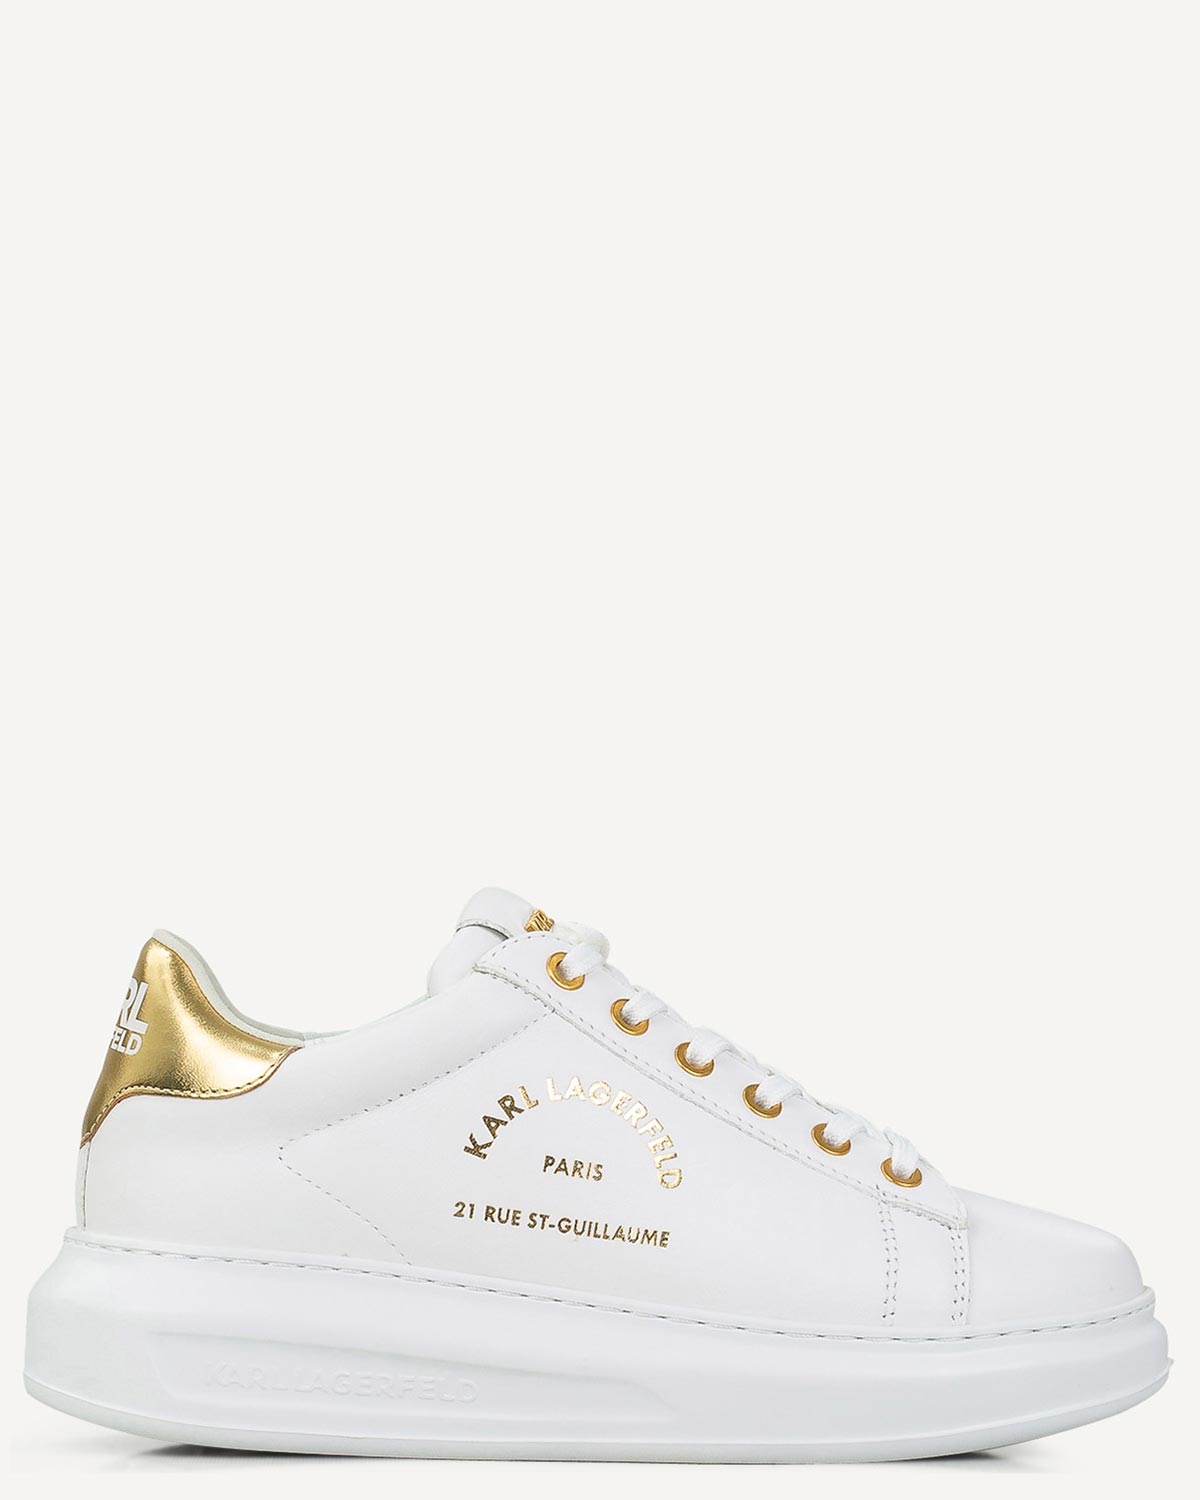 Γυναίκα - Sneakers - Karl Lagerfeld Λευκό-Χρυσό